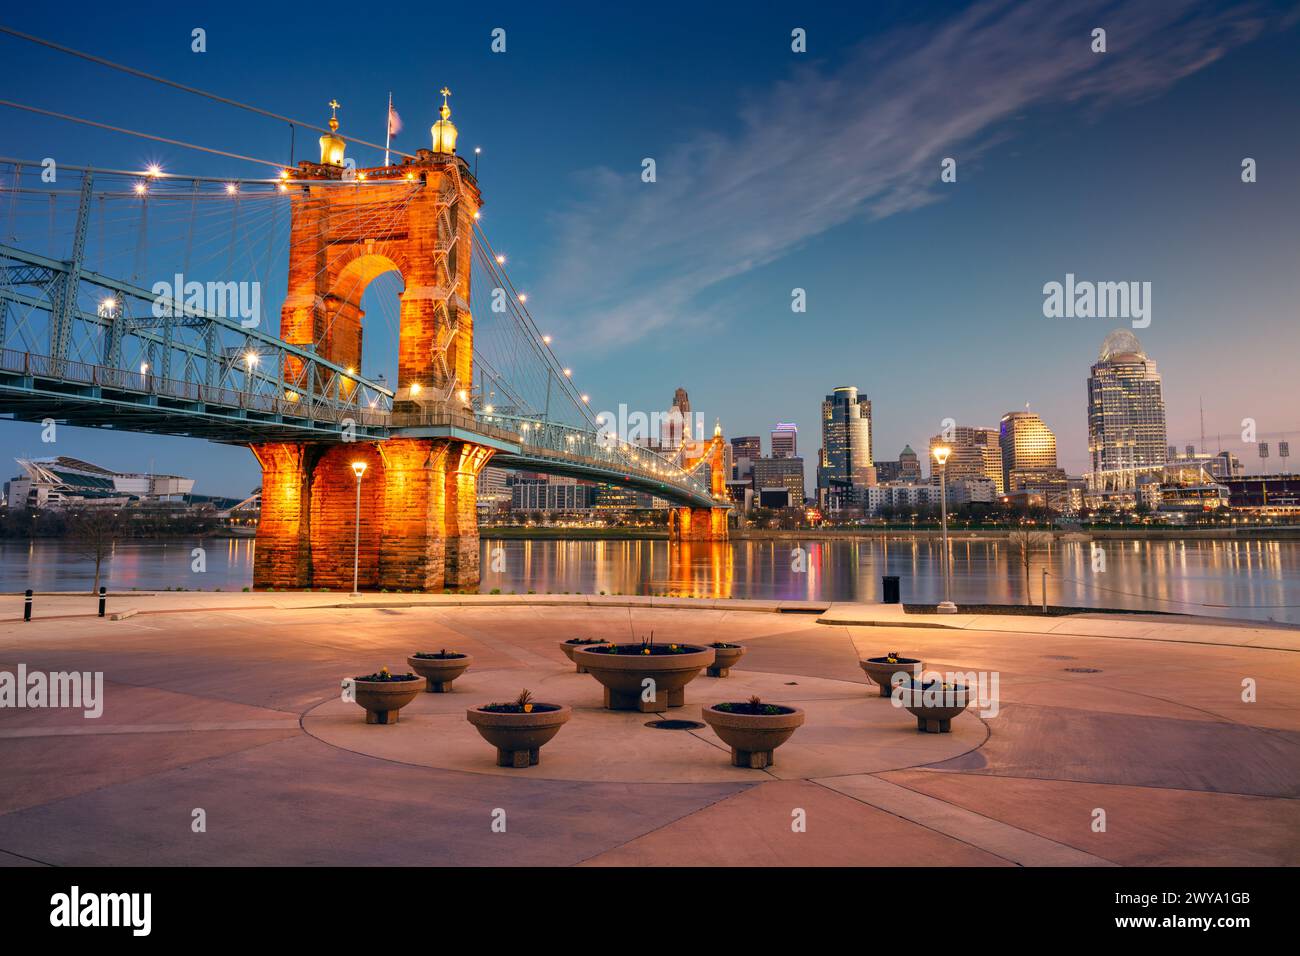 Cincinnati, Ohio, Stati Uniti. Immagine del paesaggio urbano di Cincinnati, Ohio, skyline del centro degli Stati Uniti con il ponte sospeso John A. Roebling e riflesso del cit Foto Stock